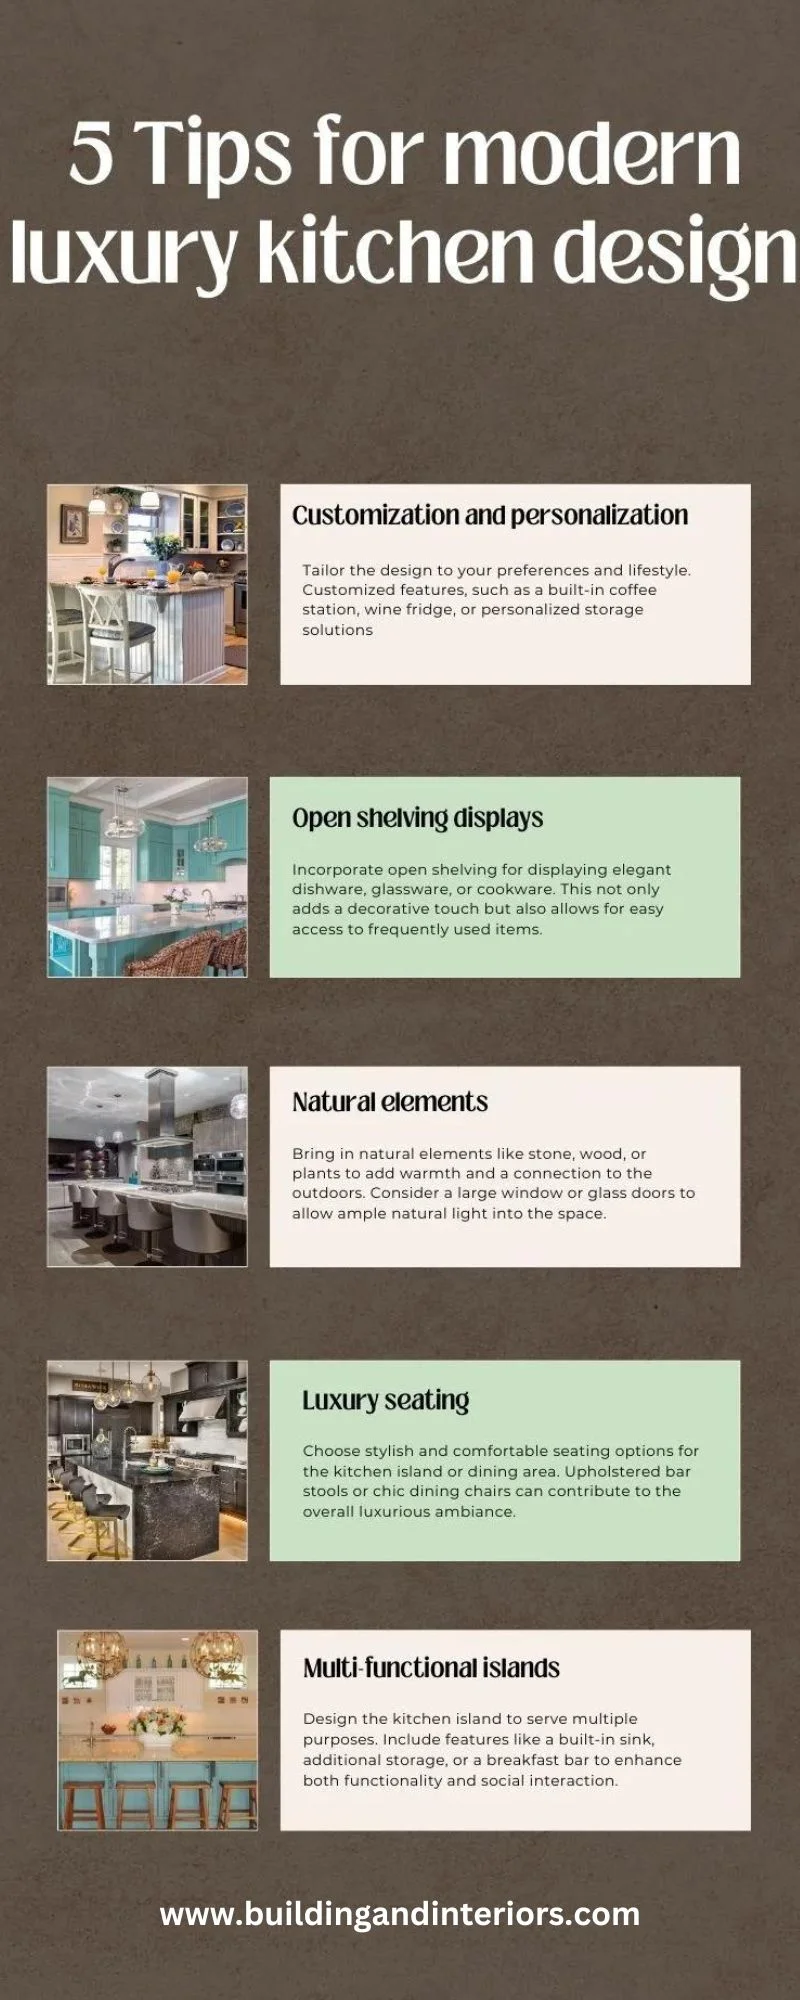 Tips for modern luxury kitchen design, elegant luxury modern kitchen designs elements